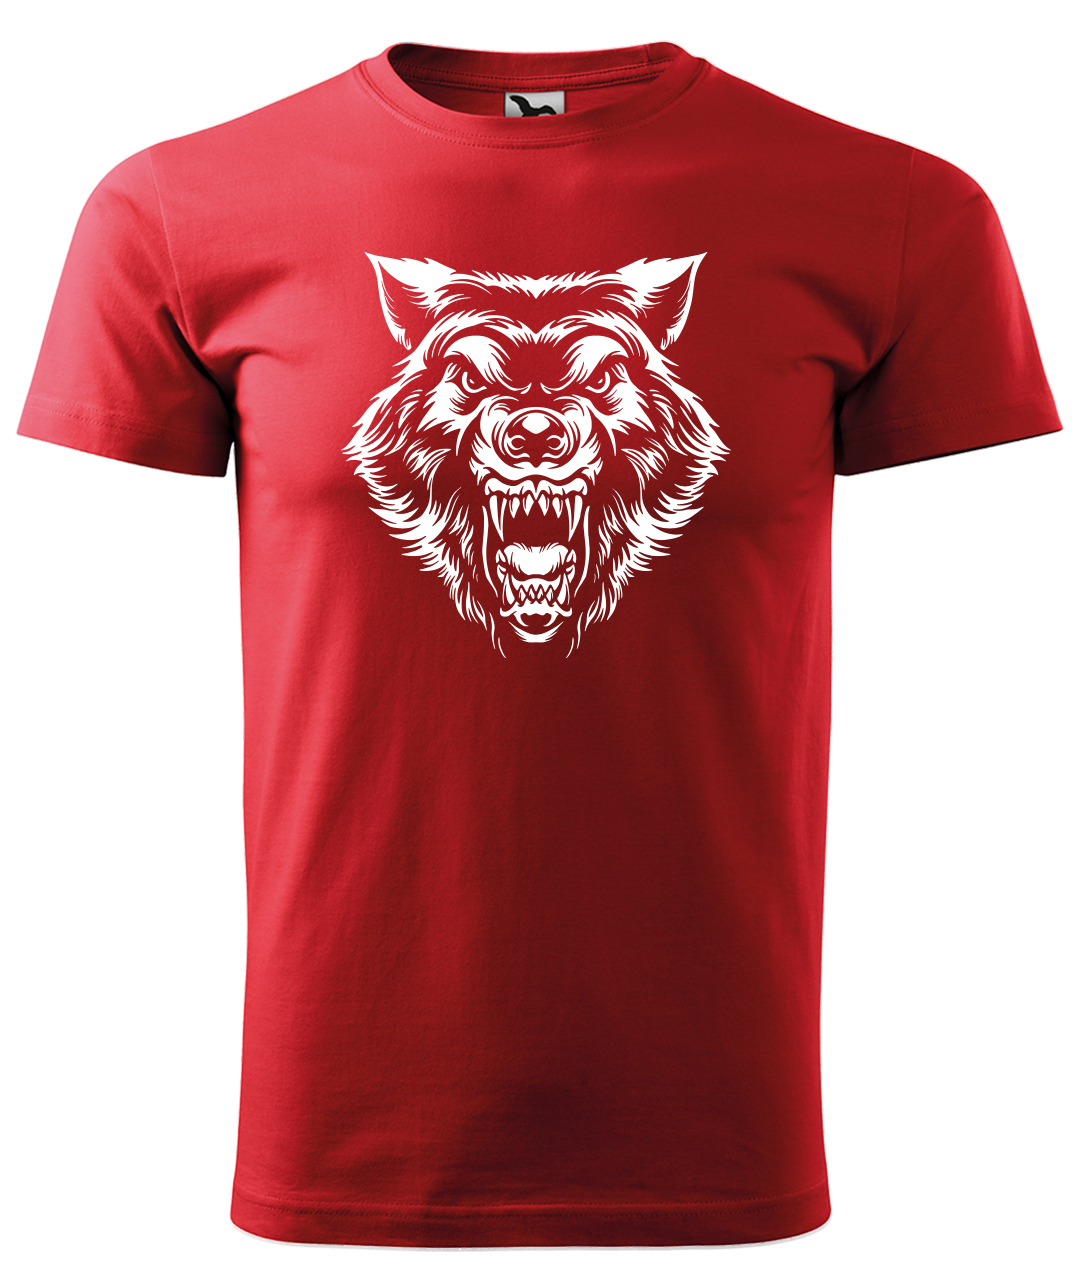 Dětské tričko s vlkem - Rozzuřený vlk Velikost: 12 let / 158 cm, Barva: Červená (07), Délka rukávu: Krátký rukáv